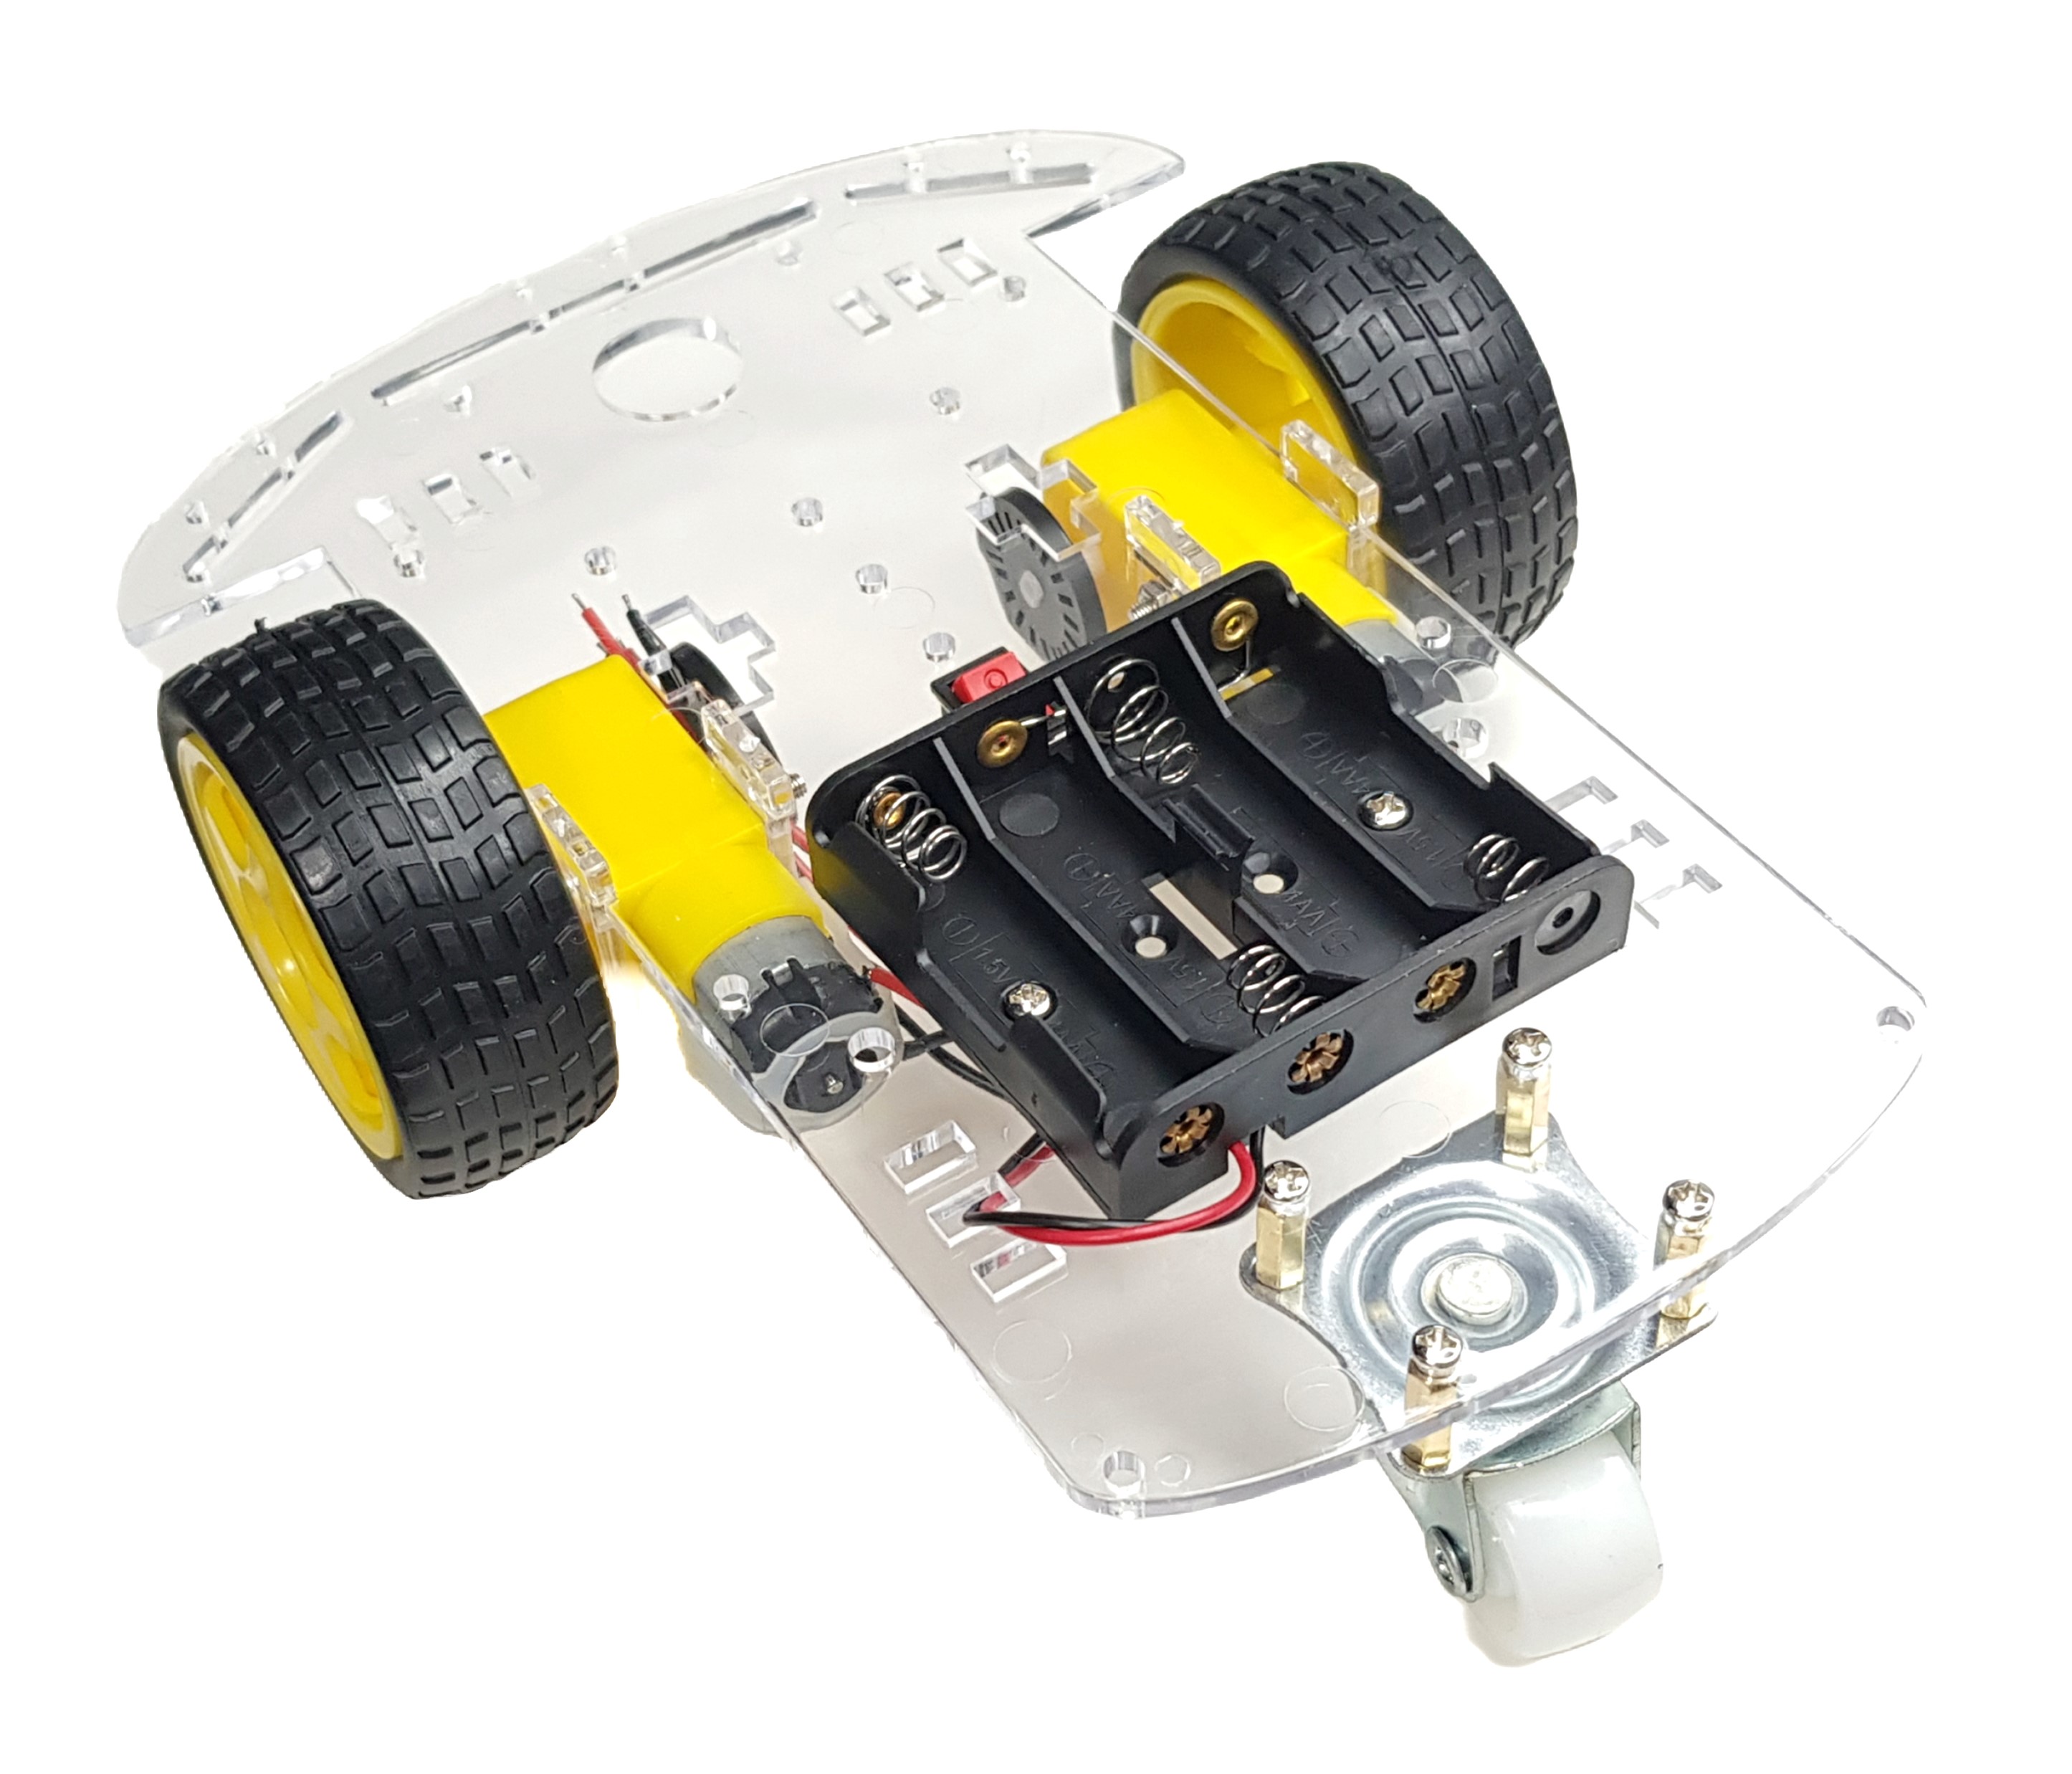 Robot Car for Arduino